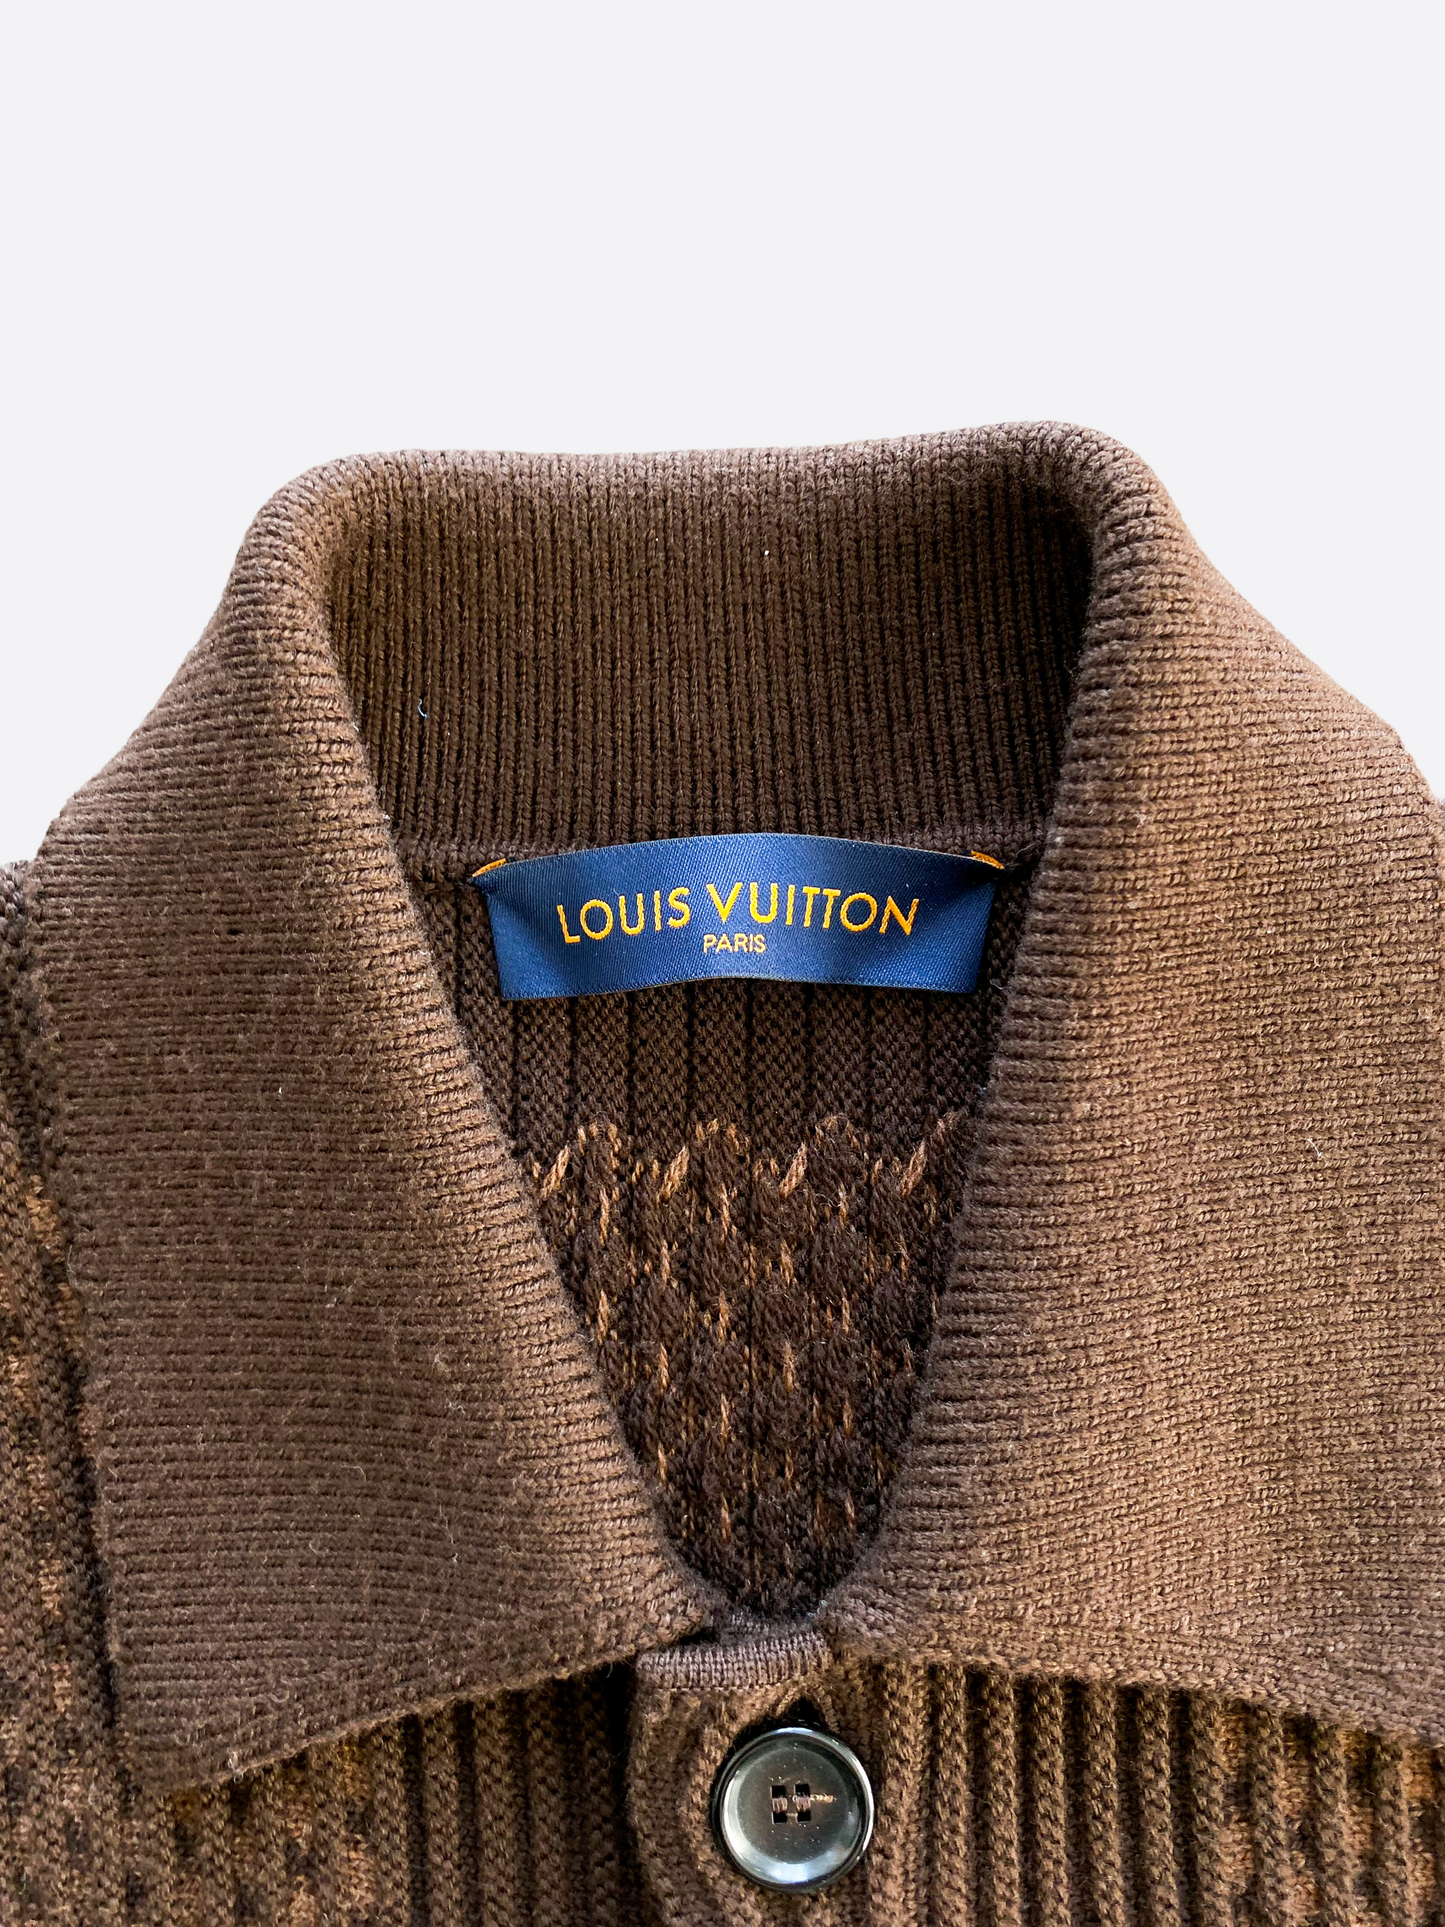 Louis Vuitton Black Damier Wool Cardigan